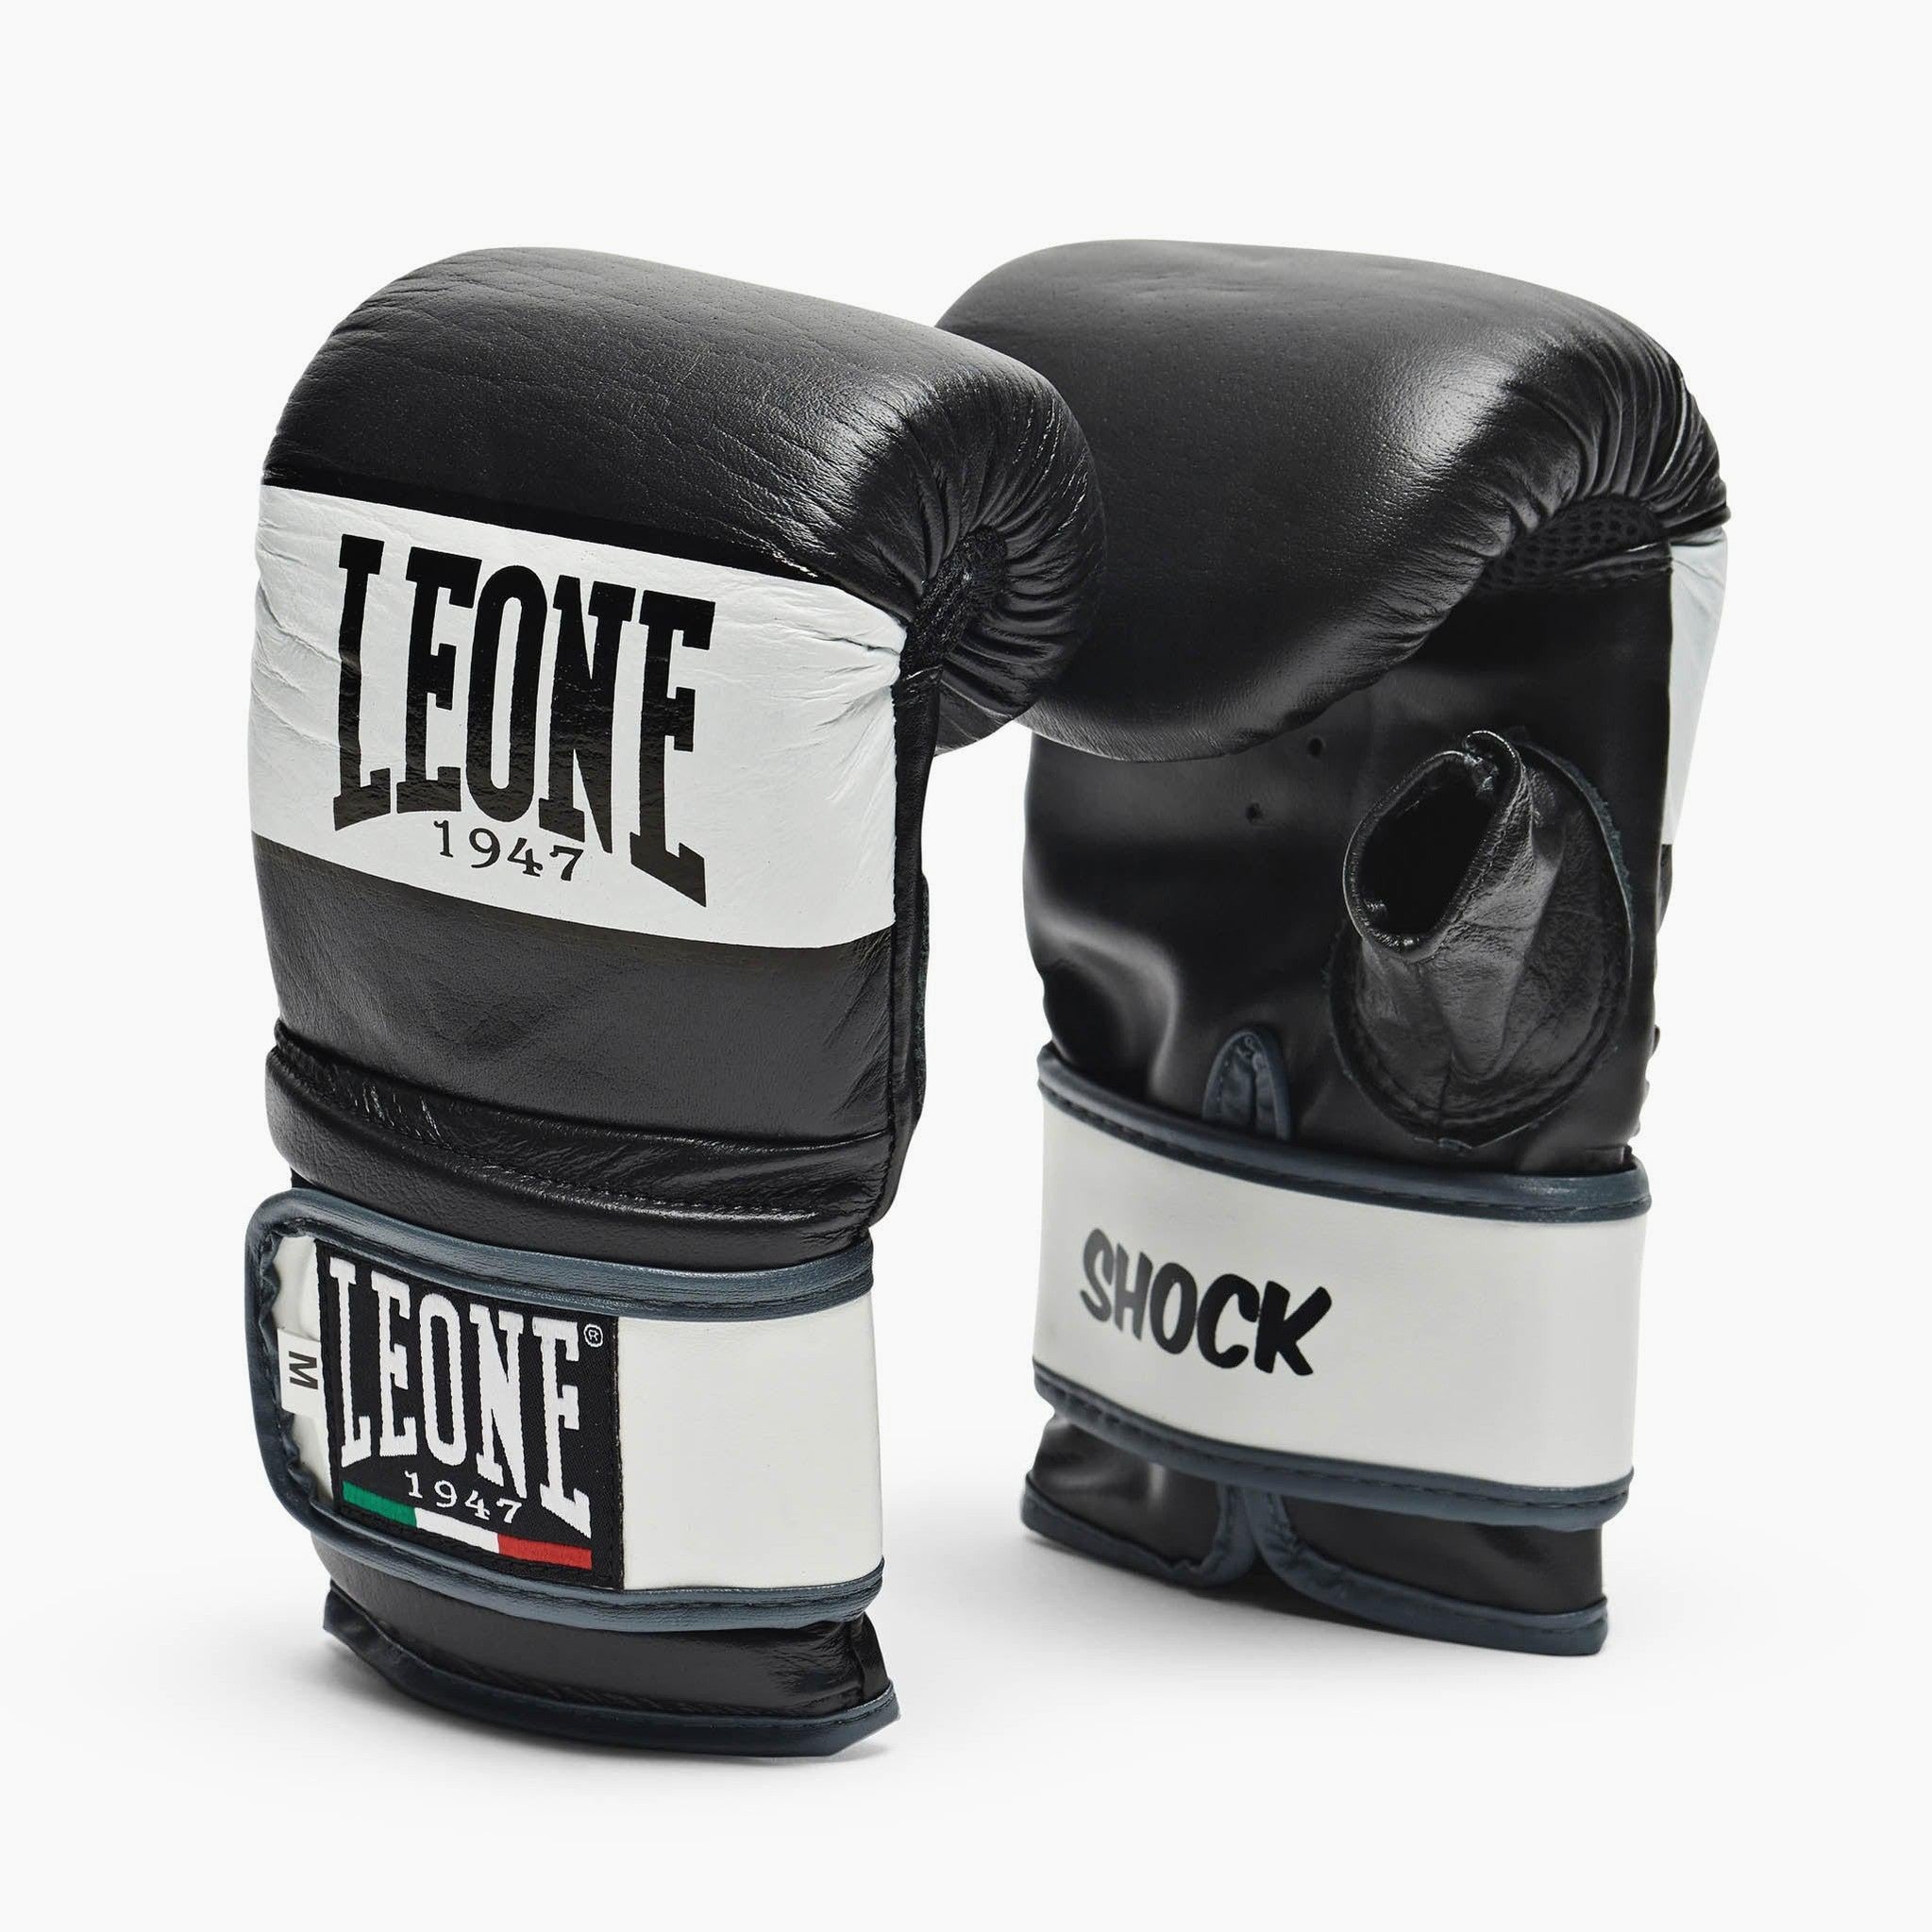 Sacco da boxe Leone con staffa da muro - Sports In vendita a Padova